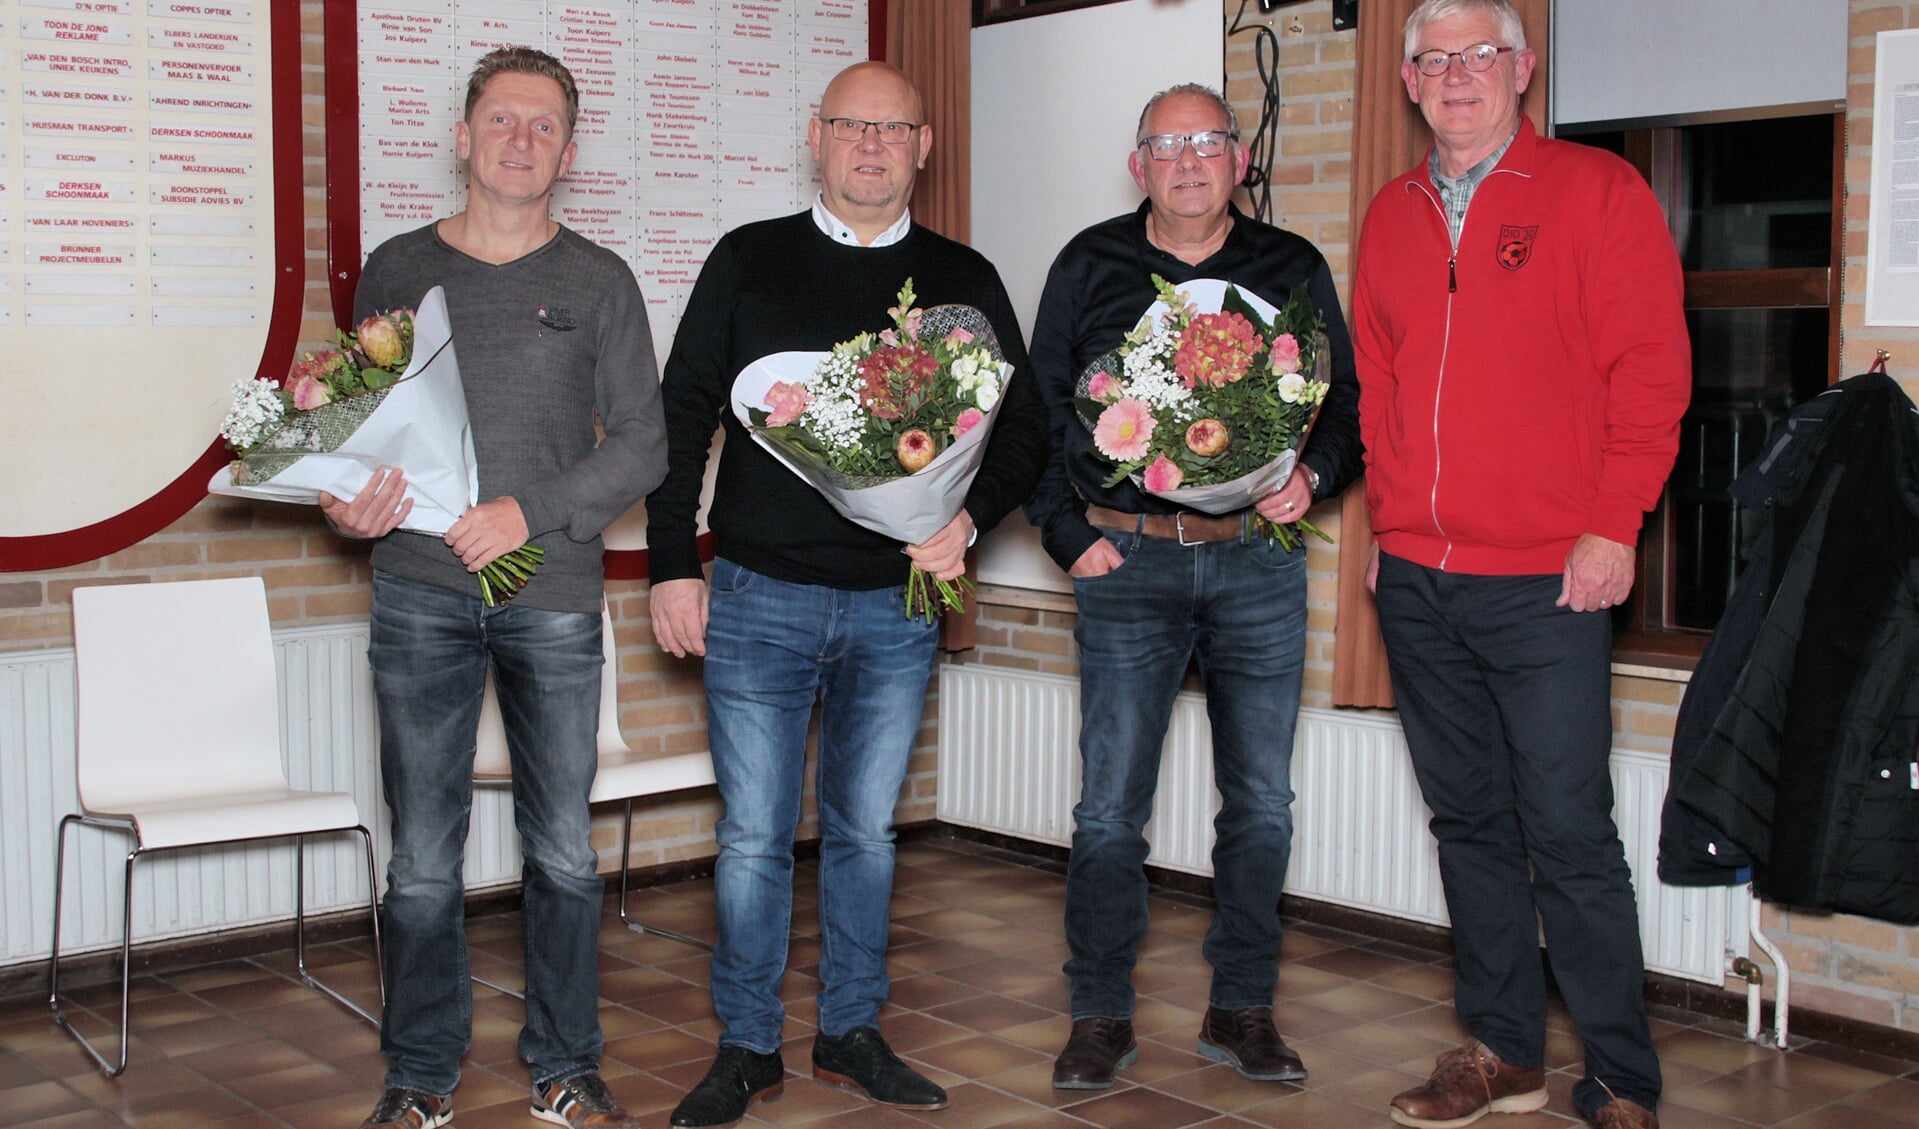 De jubilarissen gingen met voorzitter Hans Berendsen op de foto. Staand van links naar rechts: Anthony van Elk, Tonny Willems, Toon Koppers, Hans Berendsen